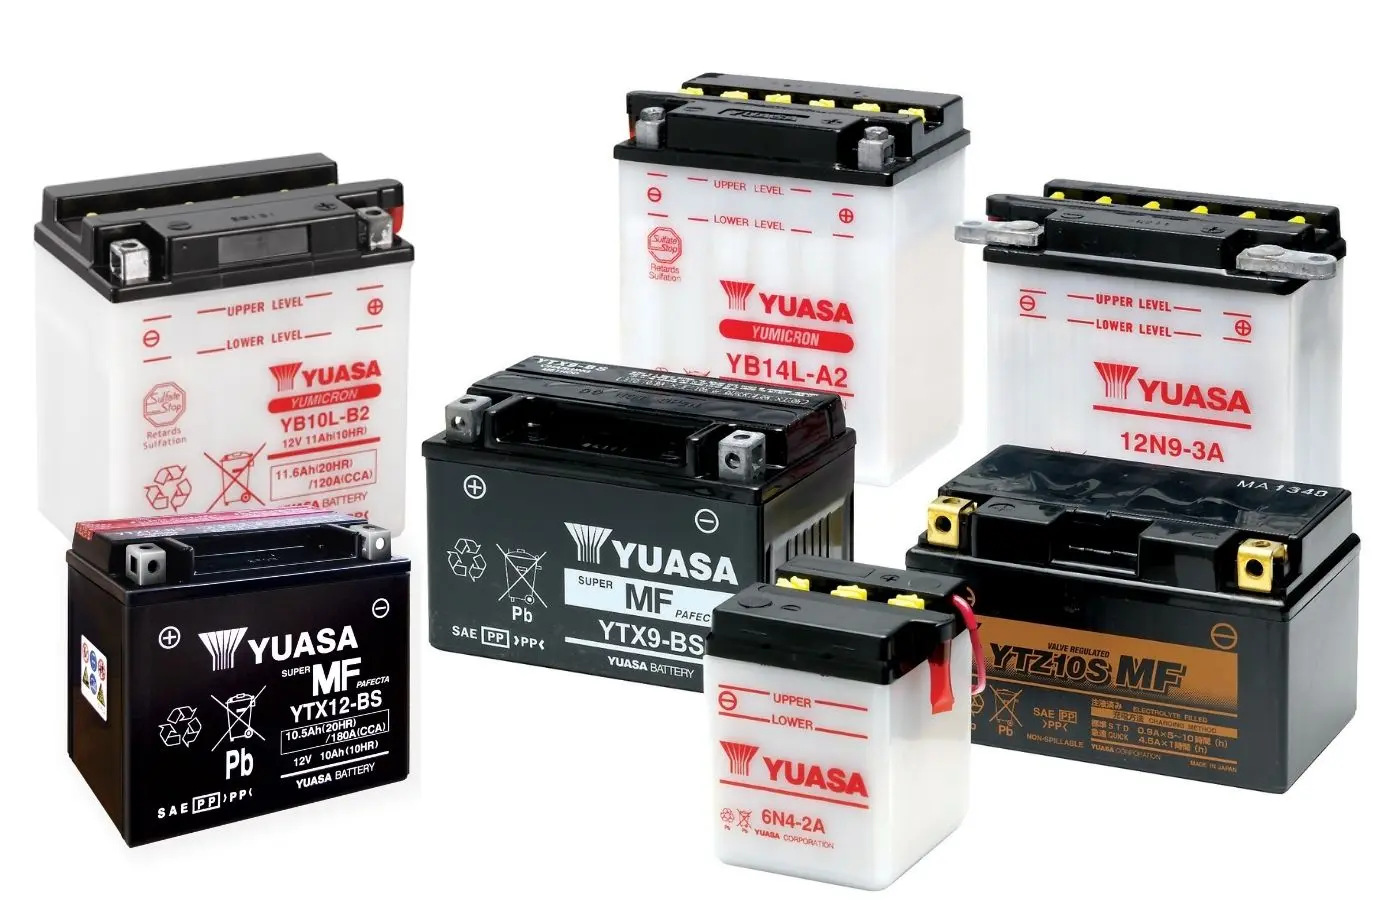 catalogo de baterias yuasa para motos - Qué tan buena es la batería Yuasa